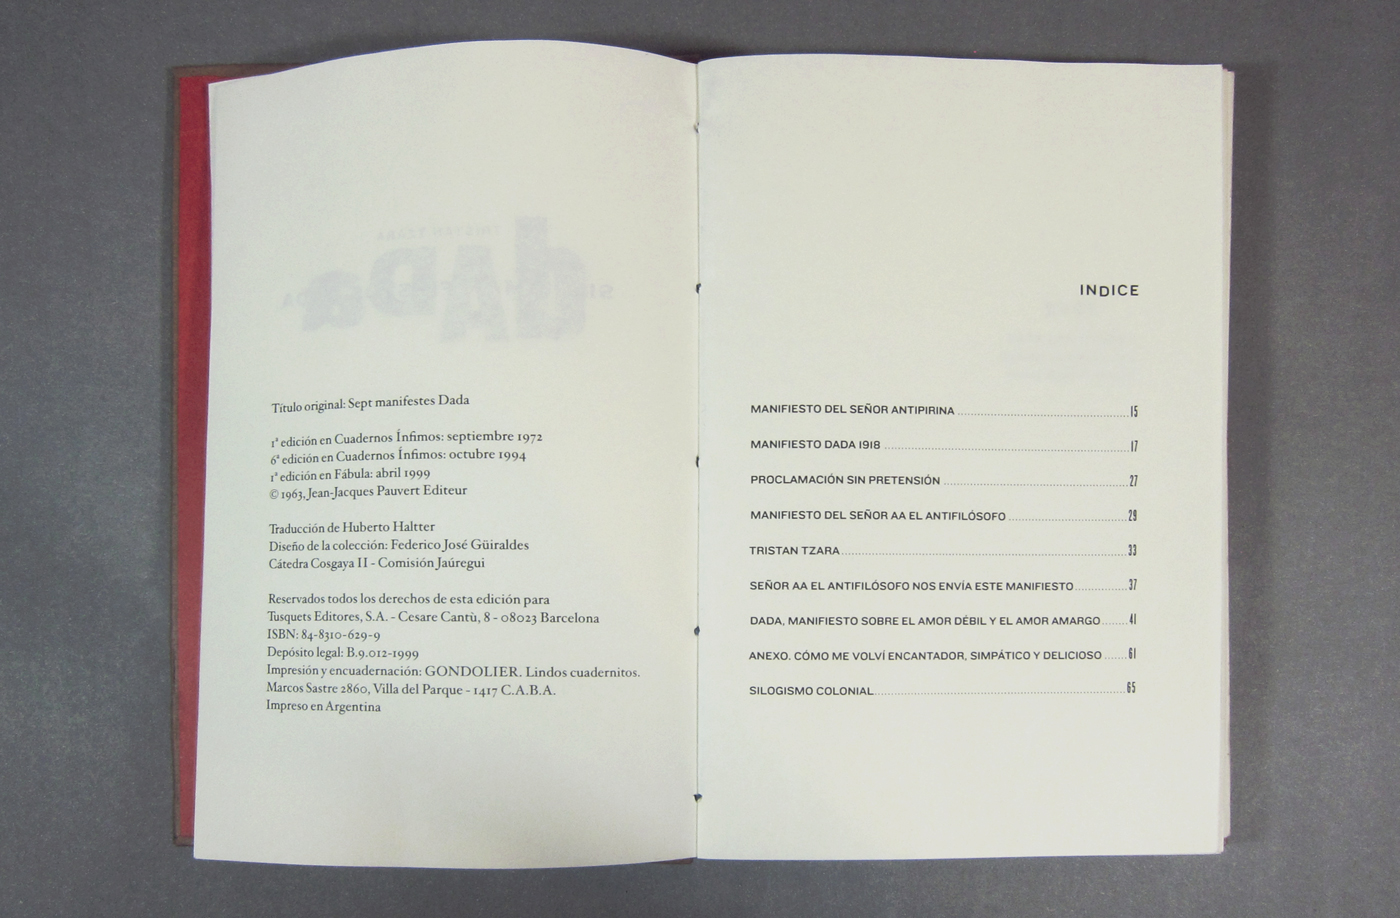 book libro book design Dada tristan tzara cosgaya catedra cosgaya tipografia fadu